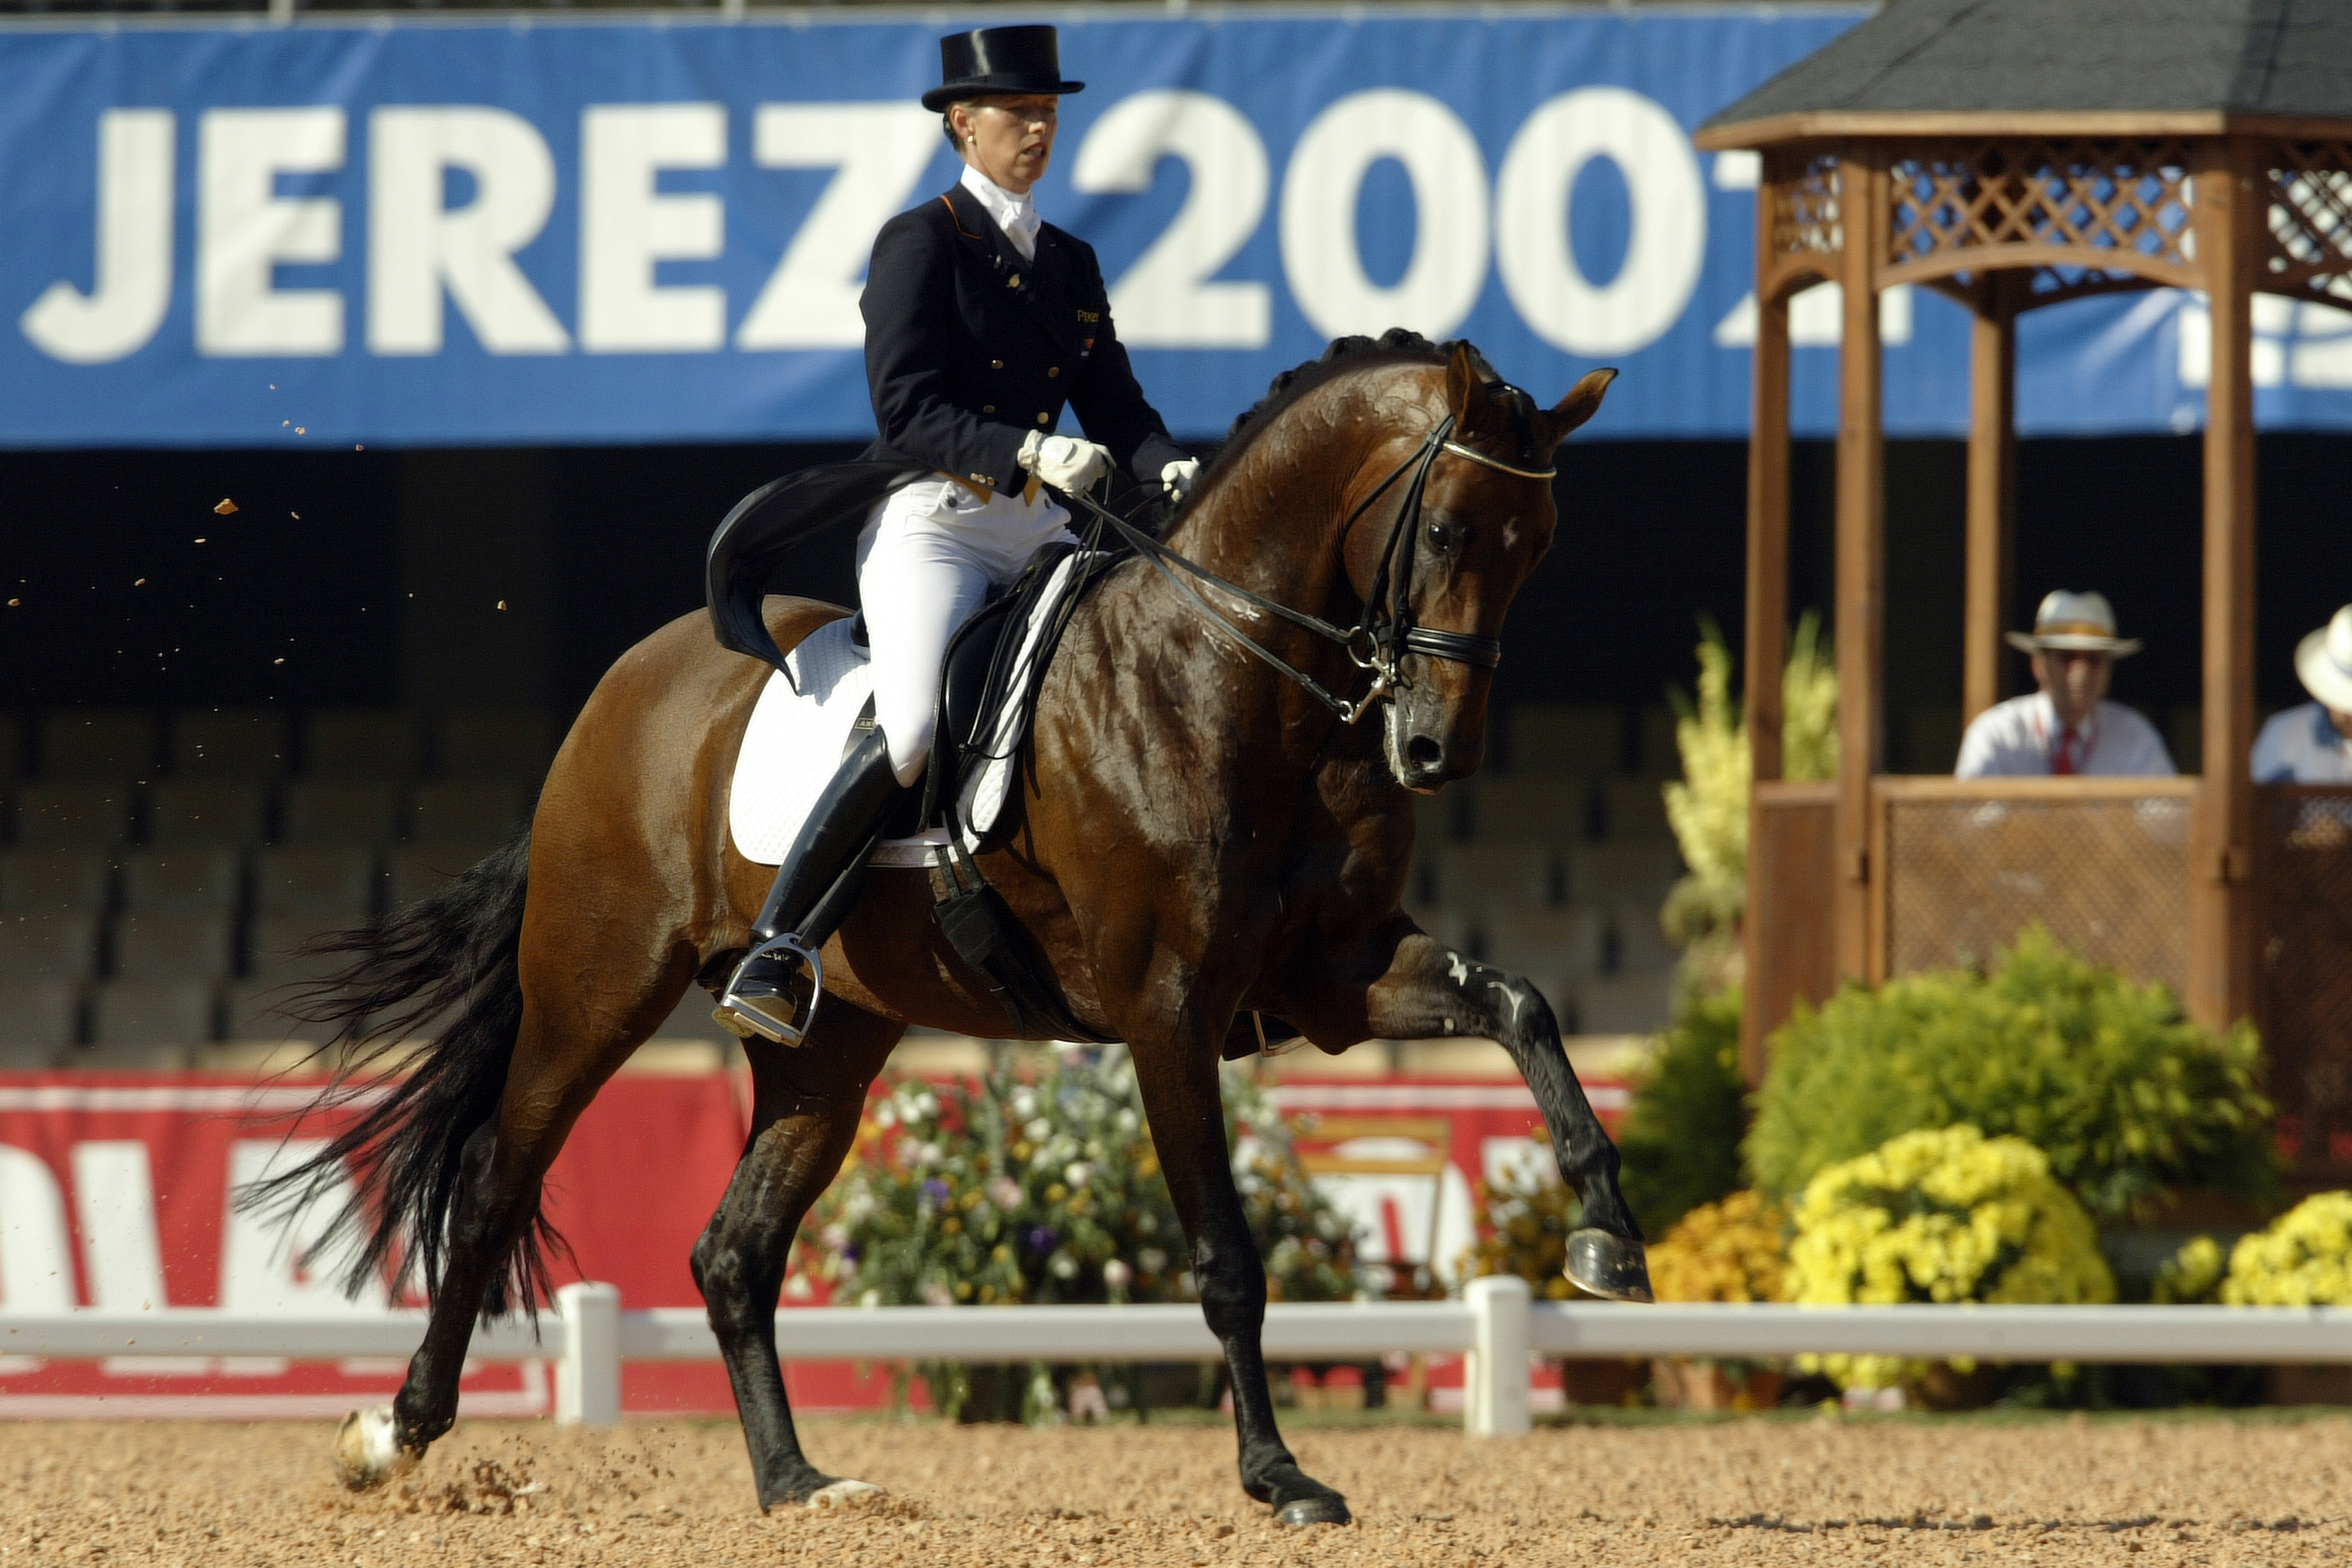 Vivaldi est un fils de Krack C, huitième des Jeux équestres mondiaux de Jerez de la Frontera en 2002 avec la mythique championne Anky van Grunsven.